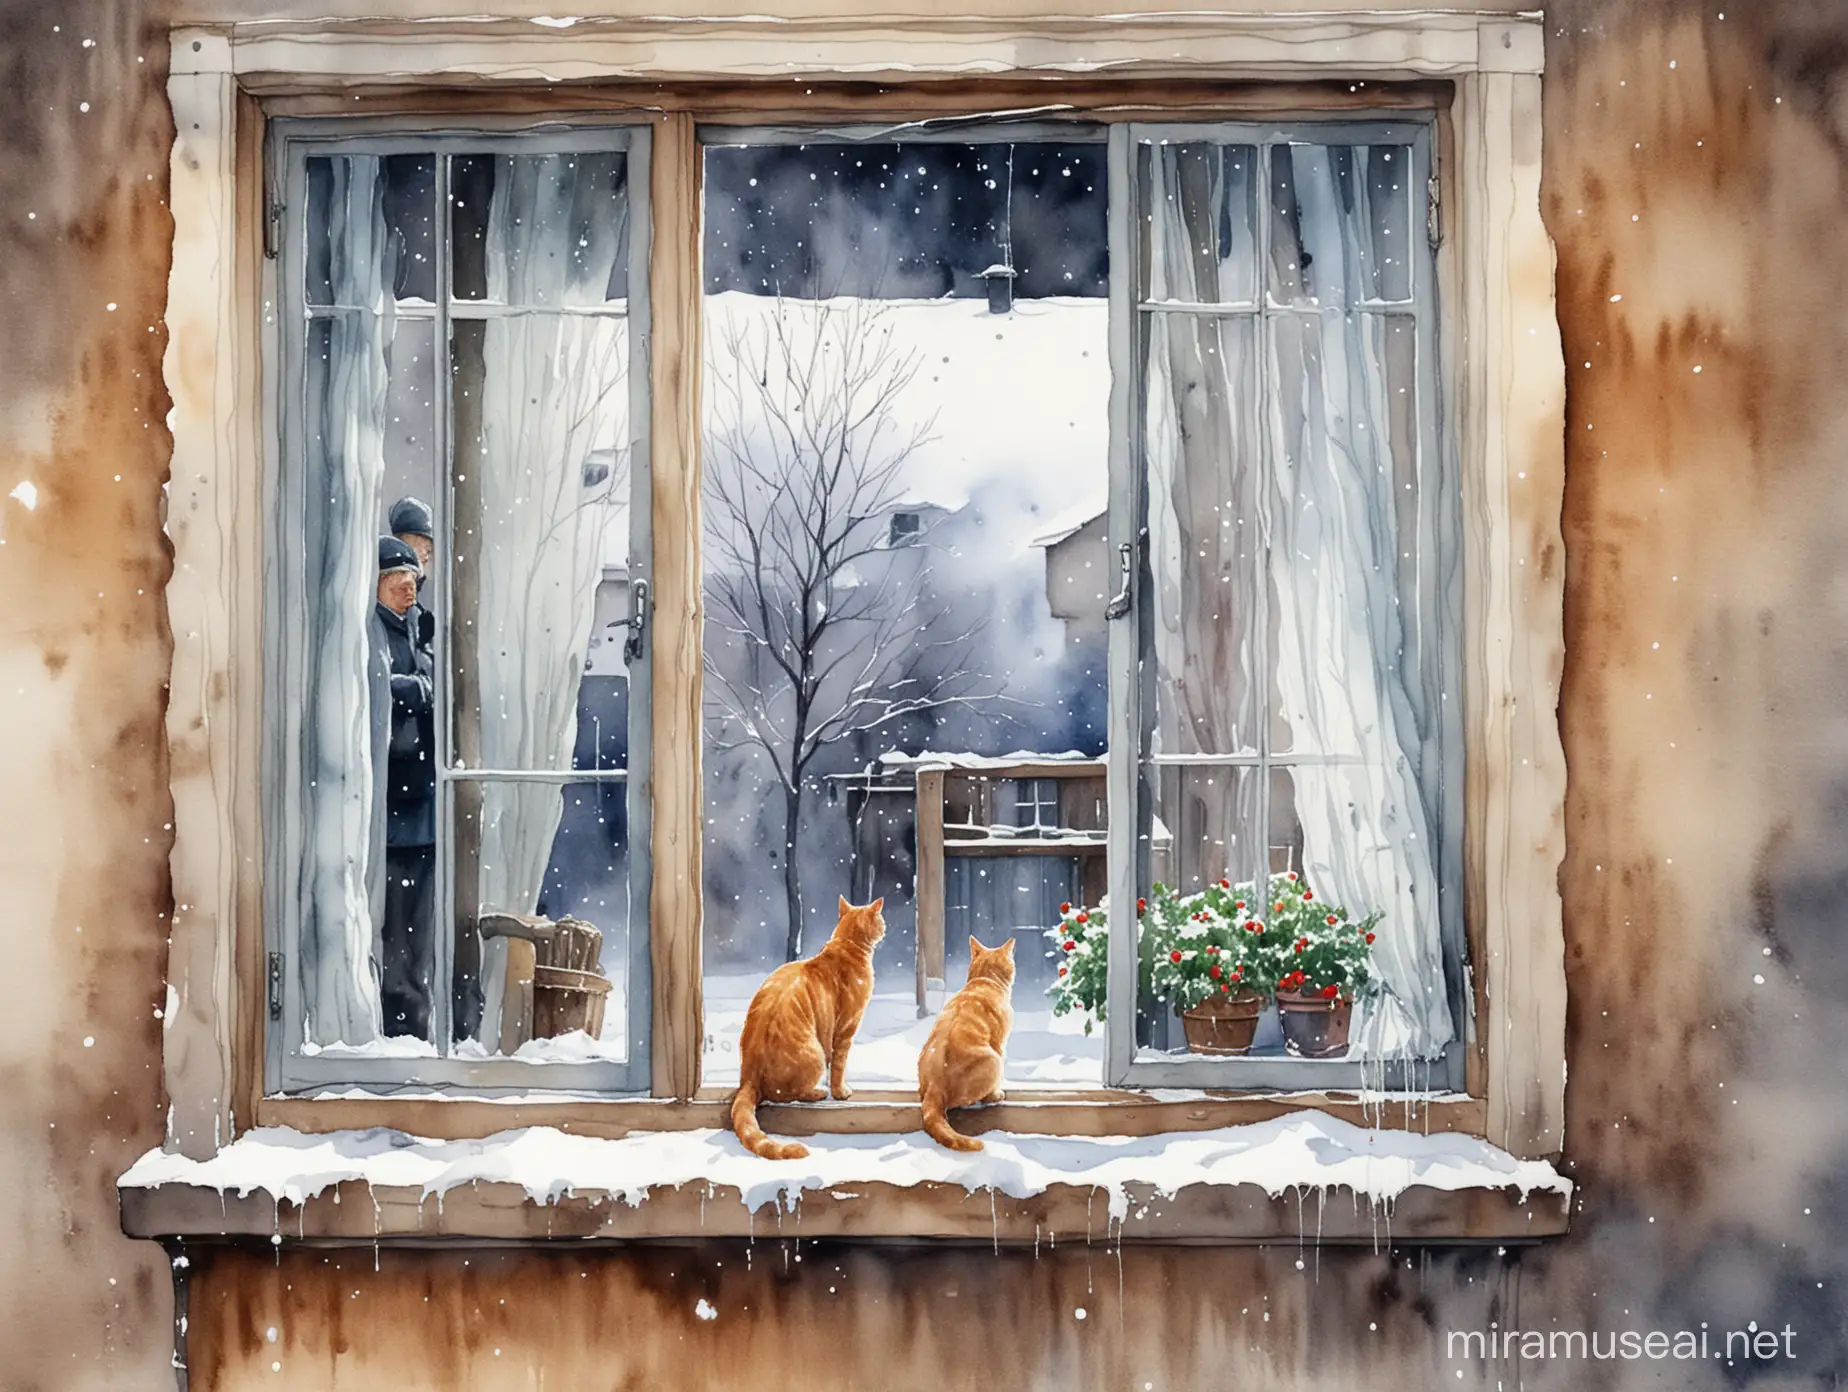 старик и кошка смотрят из окна на улицу, на улице зима, идёт снег, акварельный рисунок